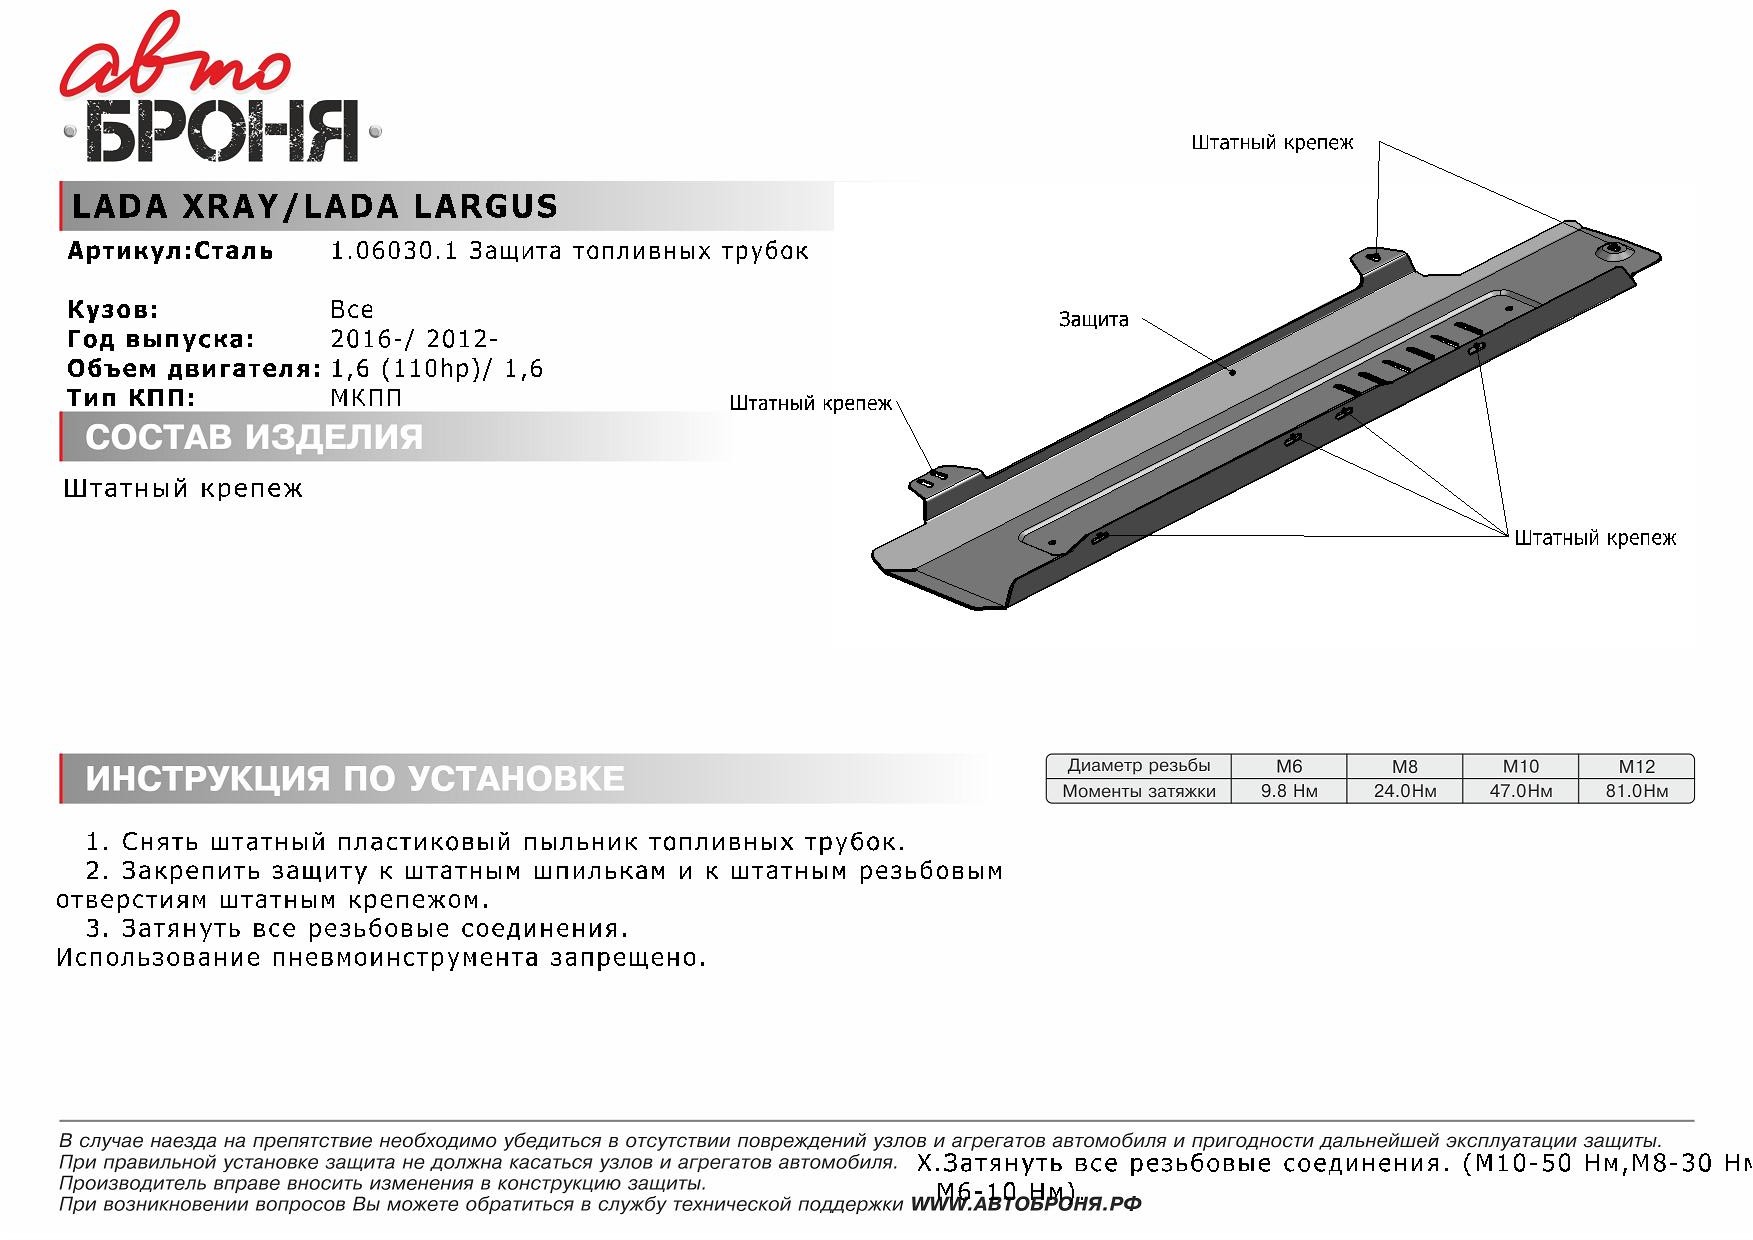 Защита топливных трубок, Lada X-Ray V - 1.6/2WD, 2015-..., штатный крепеж, сталь - Автоброня 1.06030.1